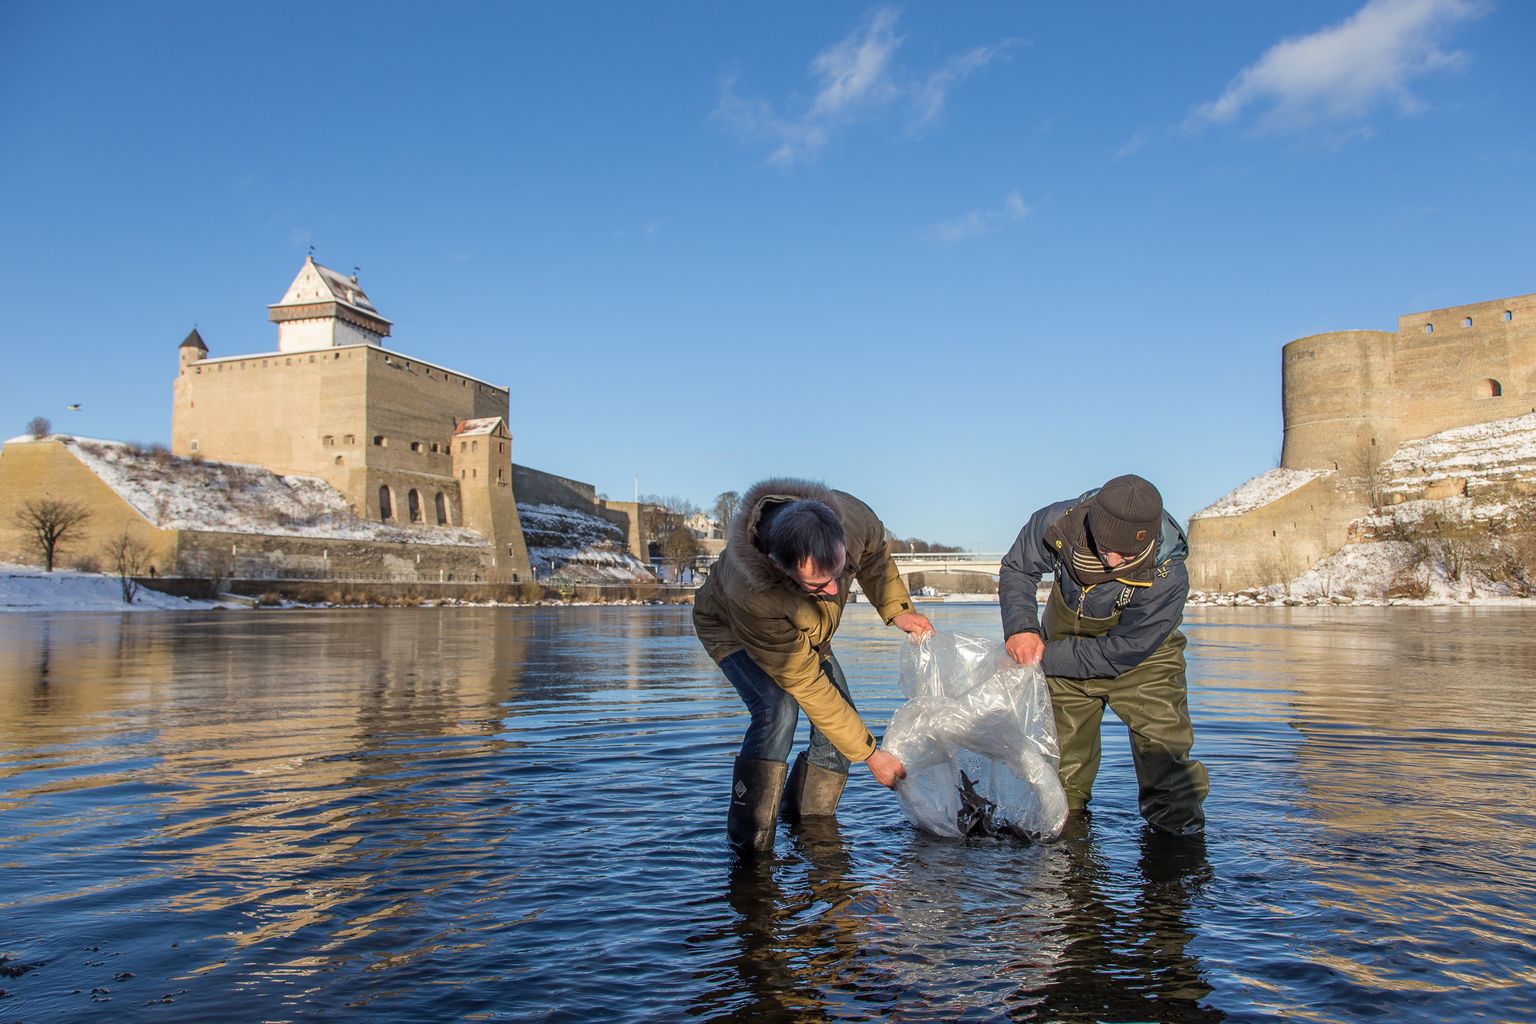 Tuurad tuleb Narva jõkke asustada piisavalt noorena, et neil selle kohaga side tekiks ja nad sinna kümne aasta pärast tagasi kudema tuleksid.